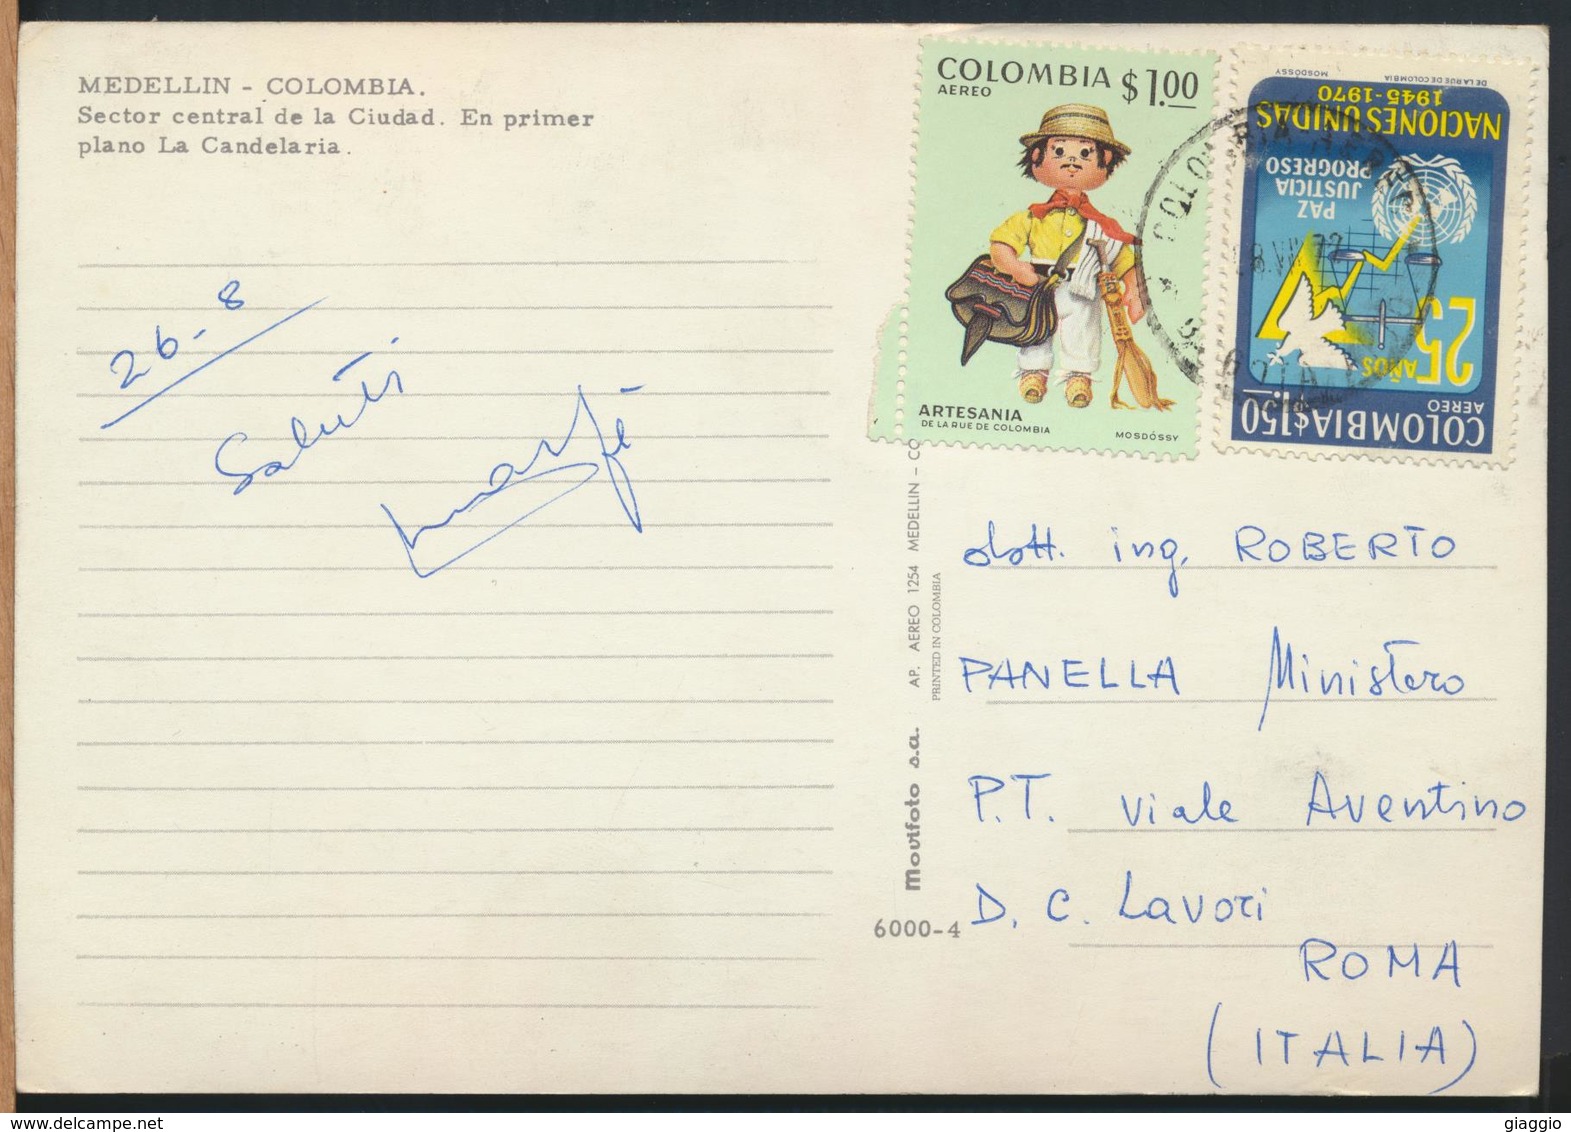 °°° 13088 - COLOMBIA - MEDELLIN - SCETOR CENTRAL DE LA CIUDAD - 1972 With Stamps °°° - Colombia